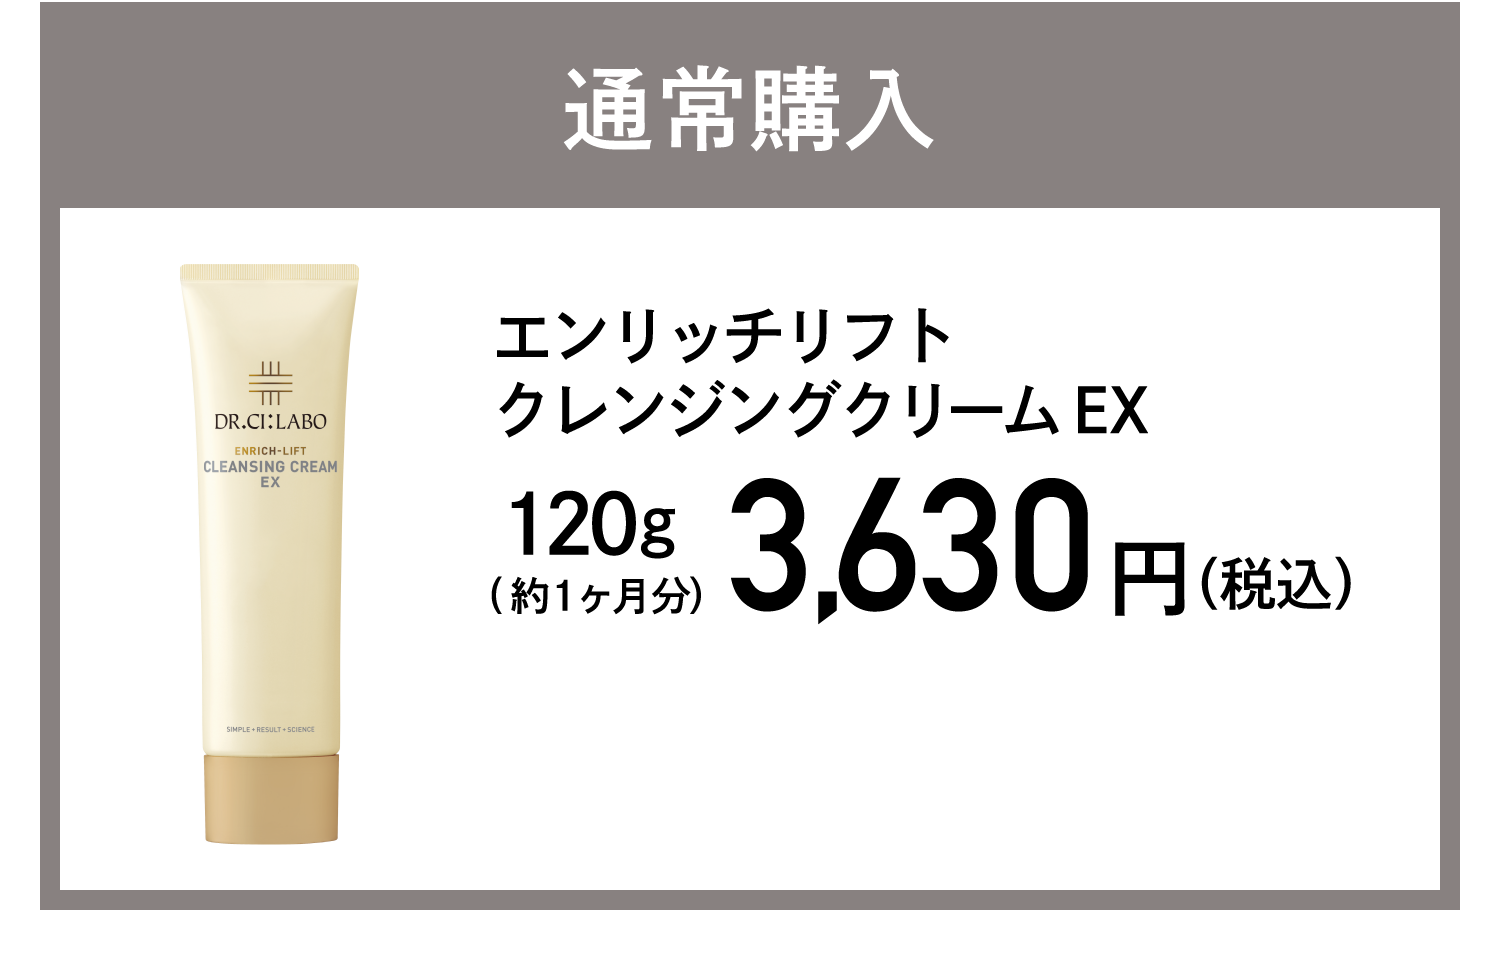 通常購入 エンリッチリフトクレンジングクリームEX  3,630円(税込)